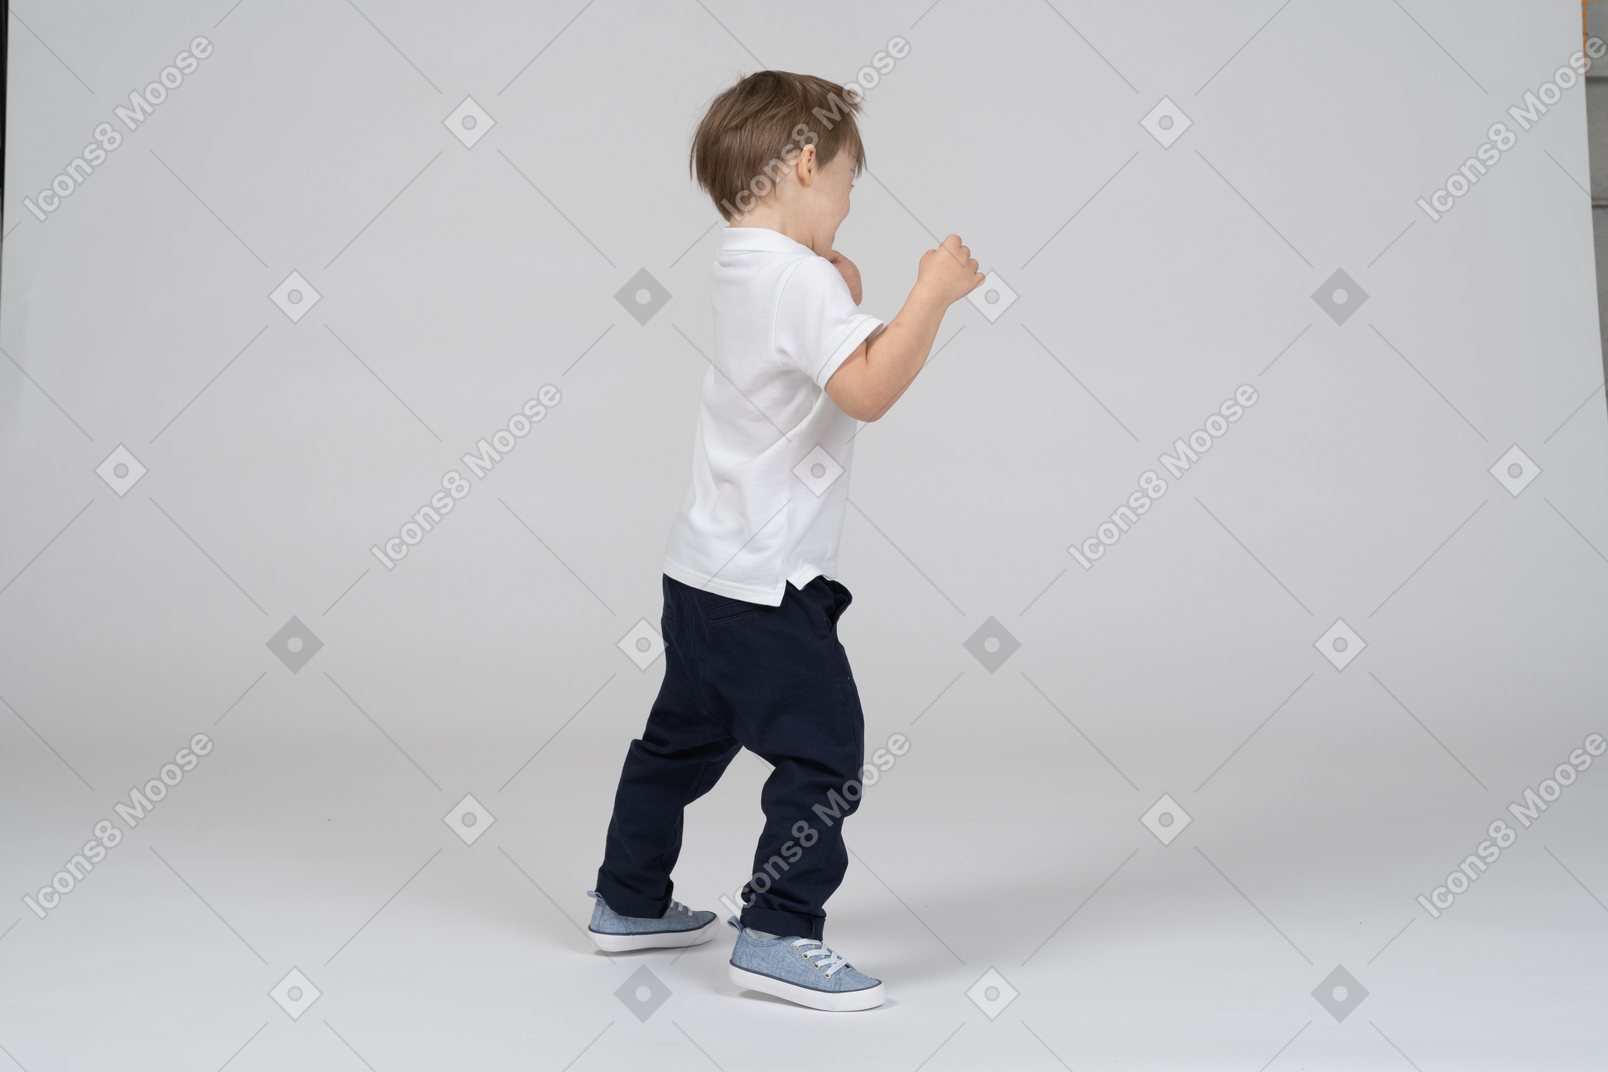 Vista lateral de un niño jugando peleando